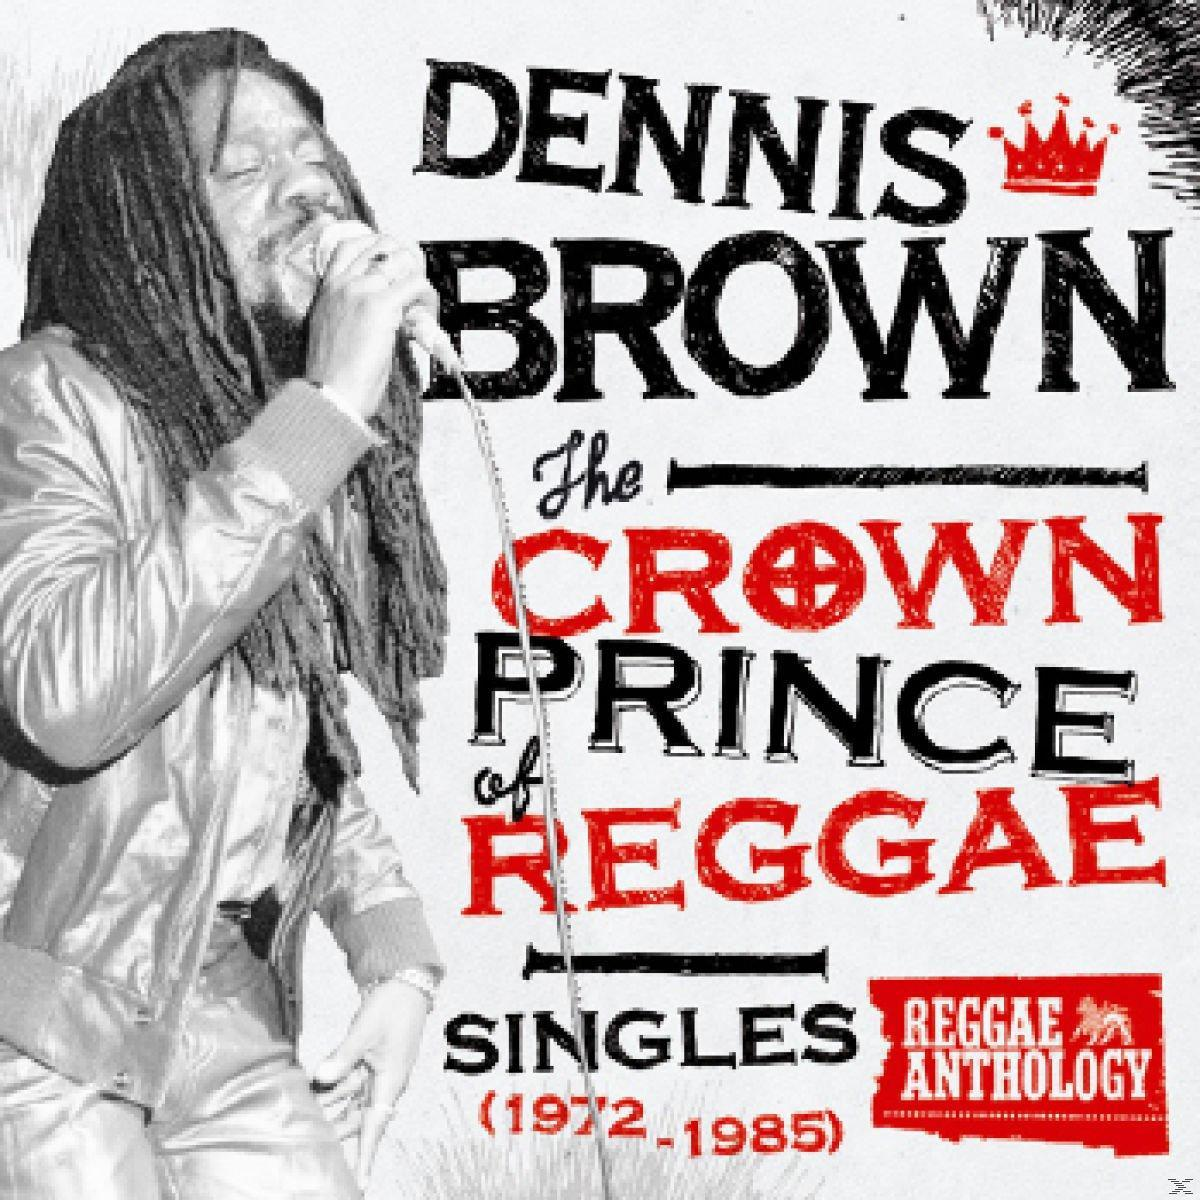 Dennis Brown - Crown Reggae Prince (Vinyl) - Of